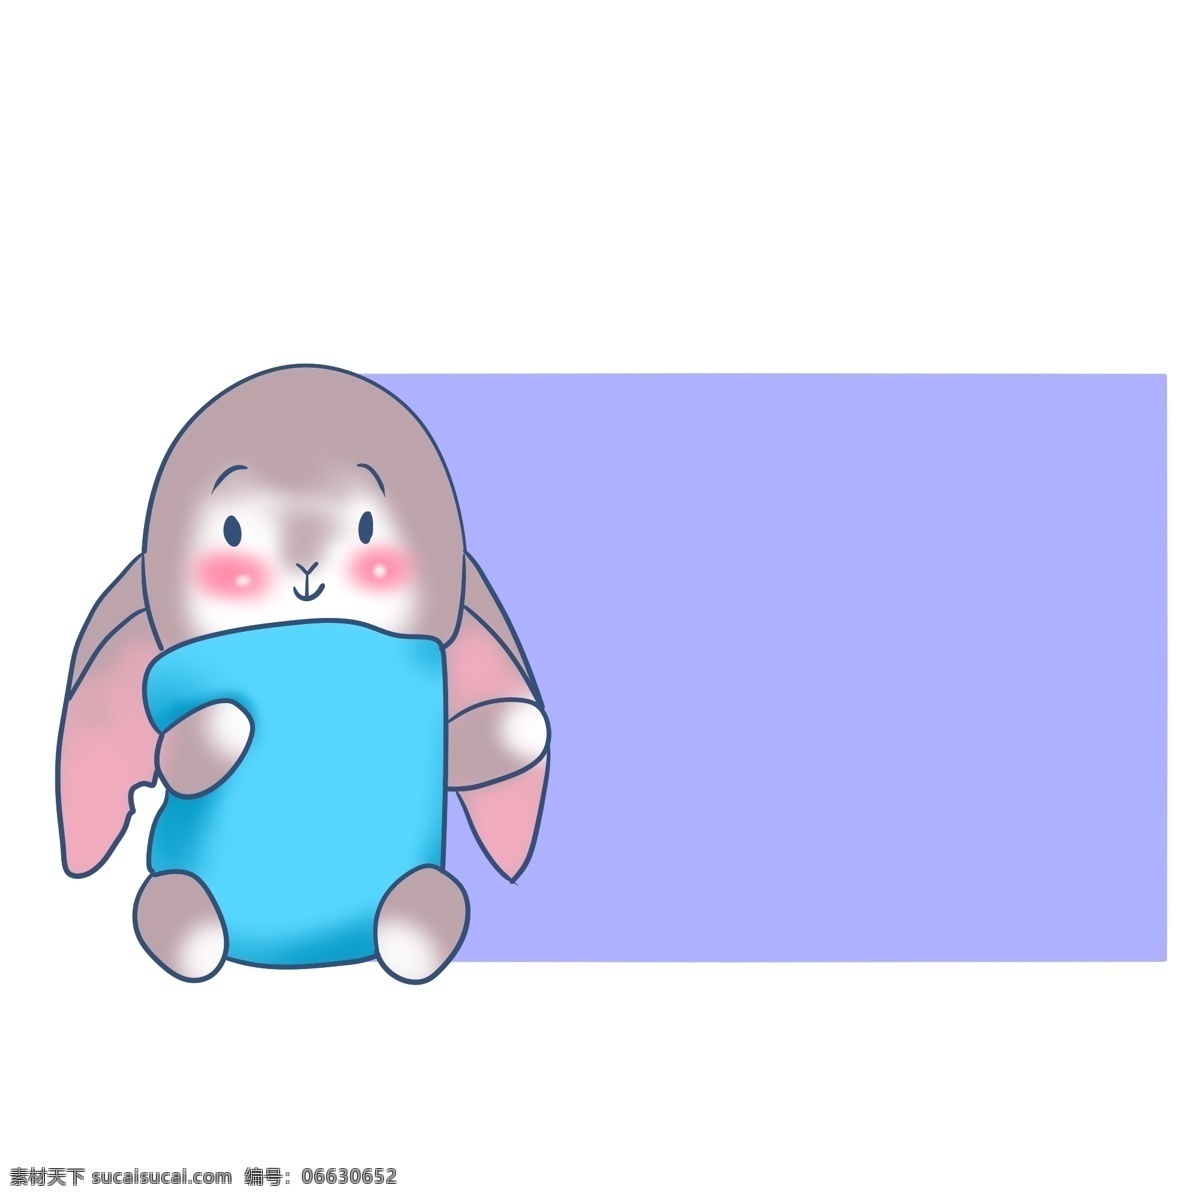 温馨 提示 小 兔子 边框 温馨提示边框 小兔子边框 紫色边框 小动物装饰 灰色的小兔子 可爱的小兔子